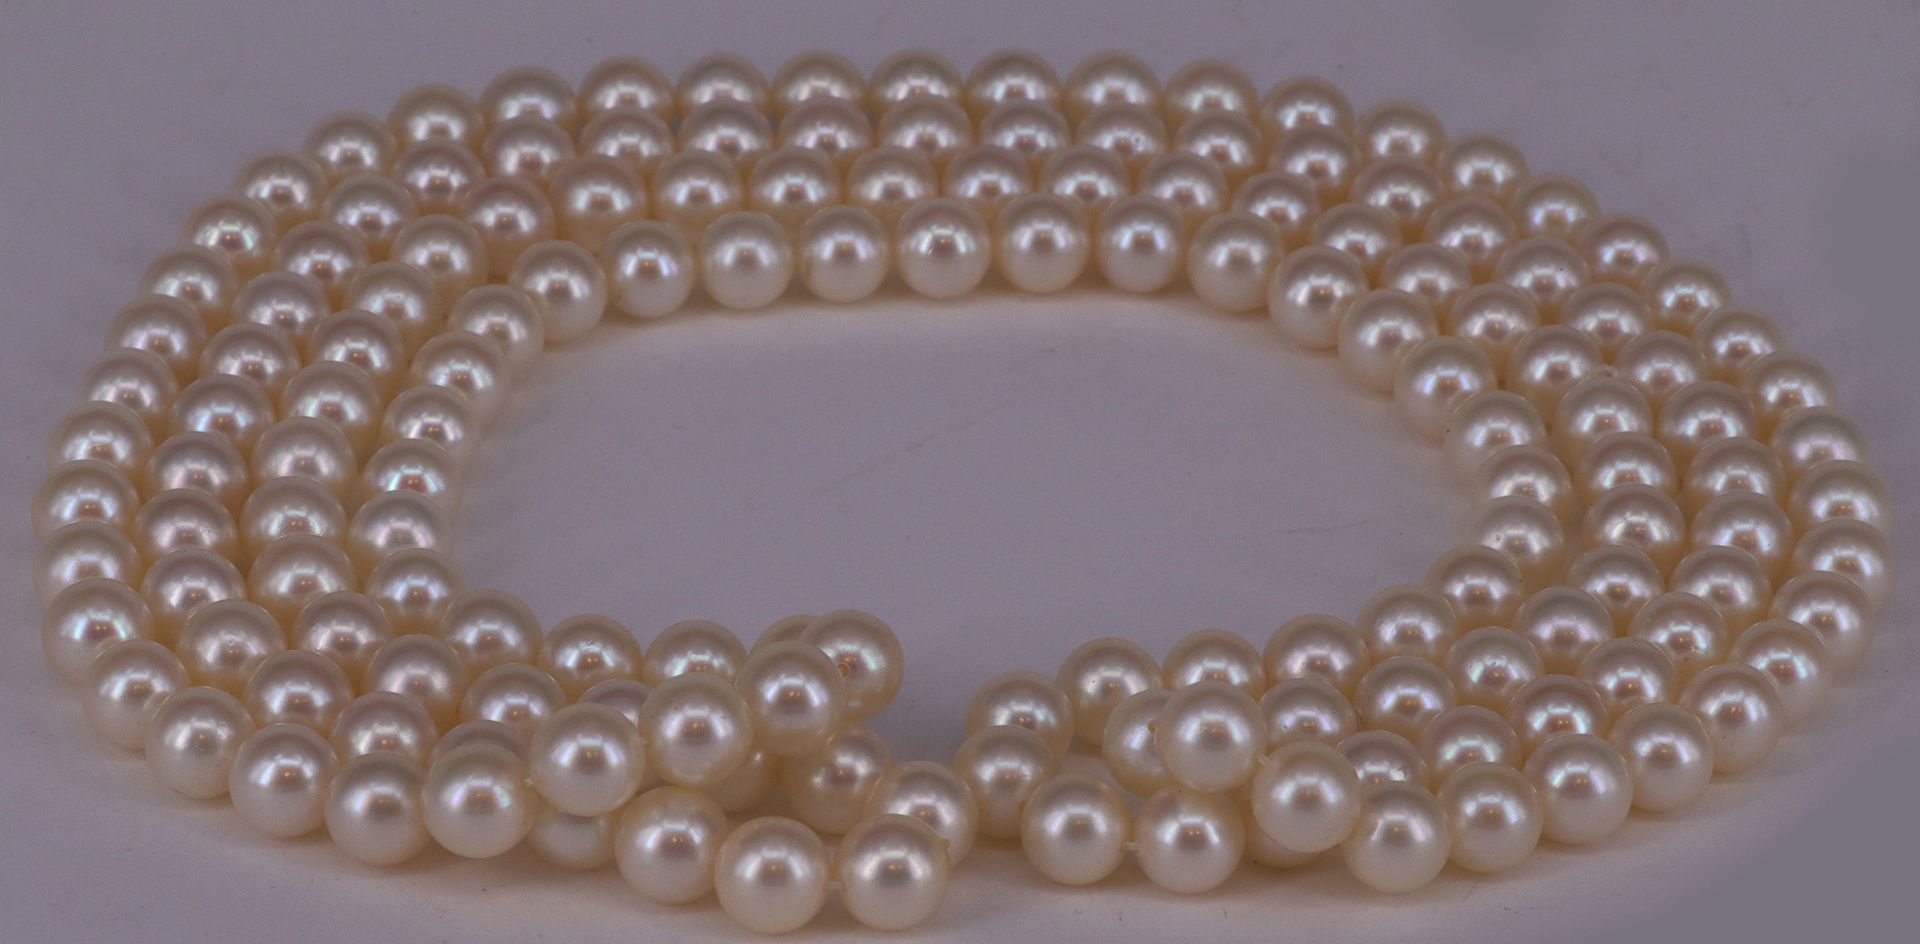 Perlenkette, Zuchtperlen, lange Kette mit ca. 6,5 mm gleichmäßig großen Perlen, L. 108 cm. Mit Beleg - Image 2 of 3